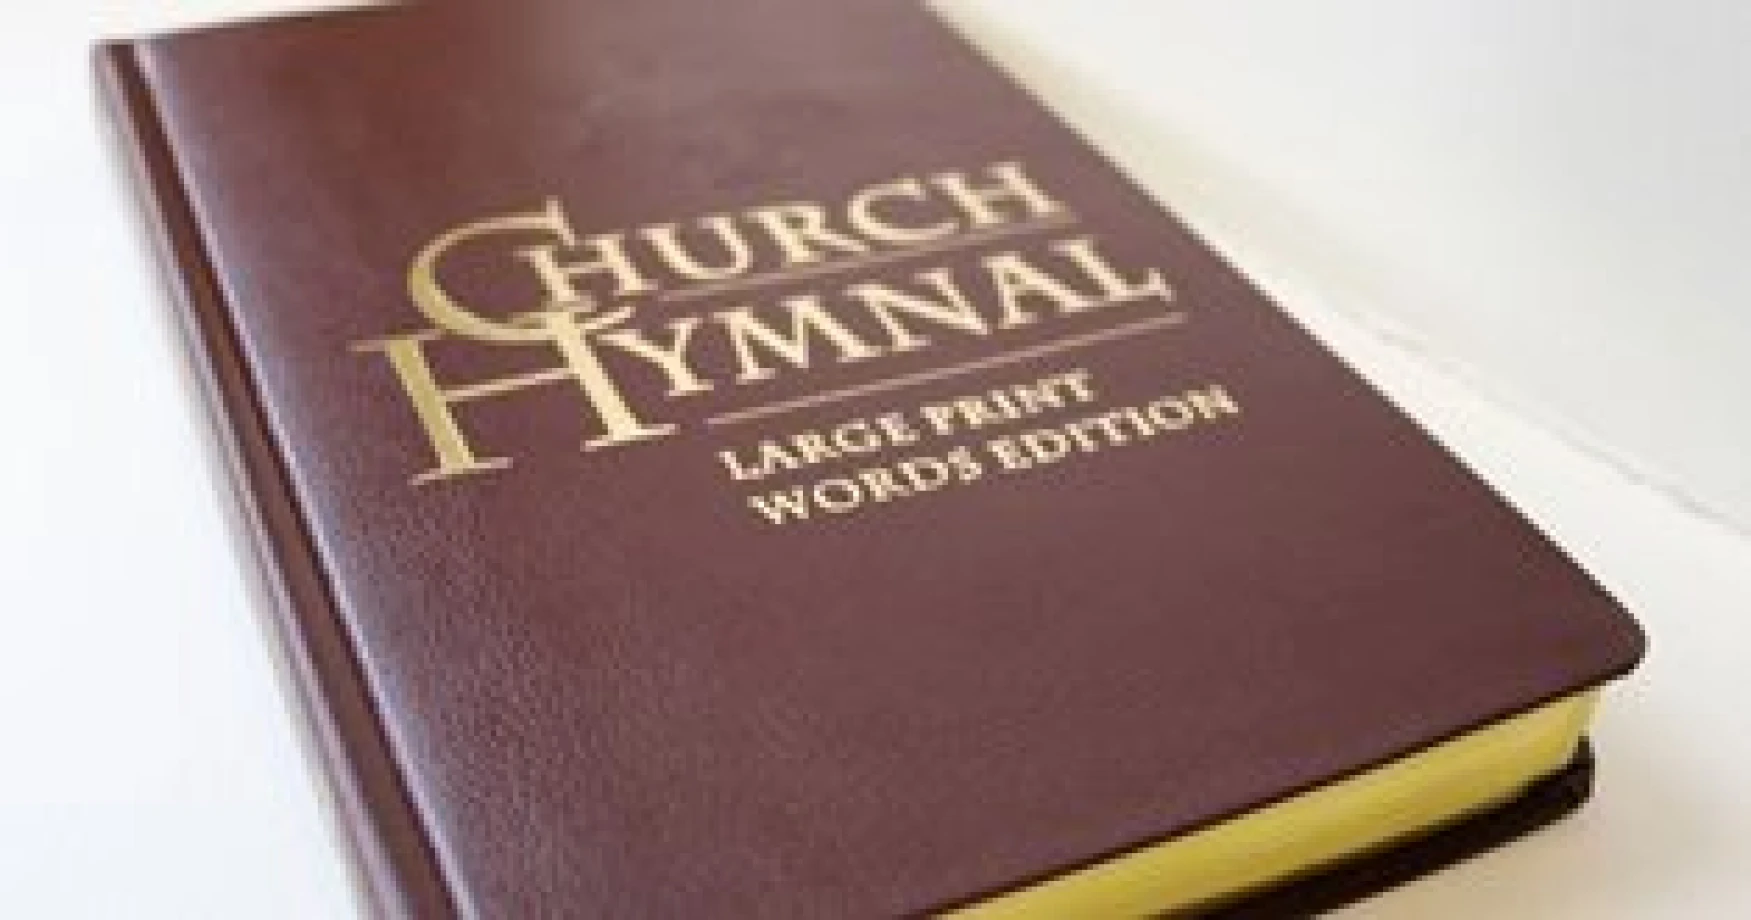 Presentation hymnals on sale